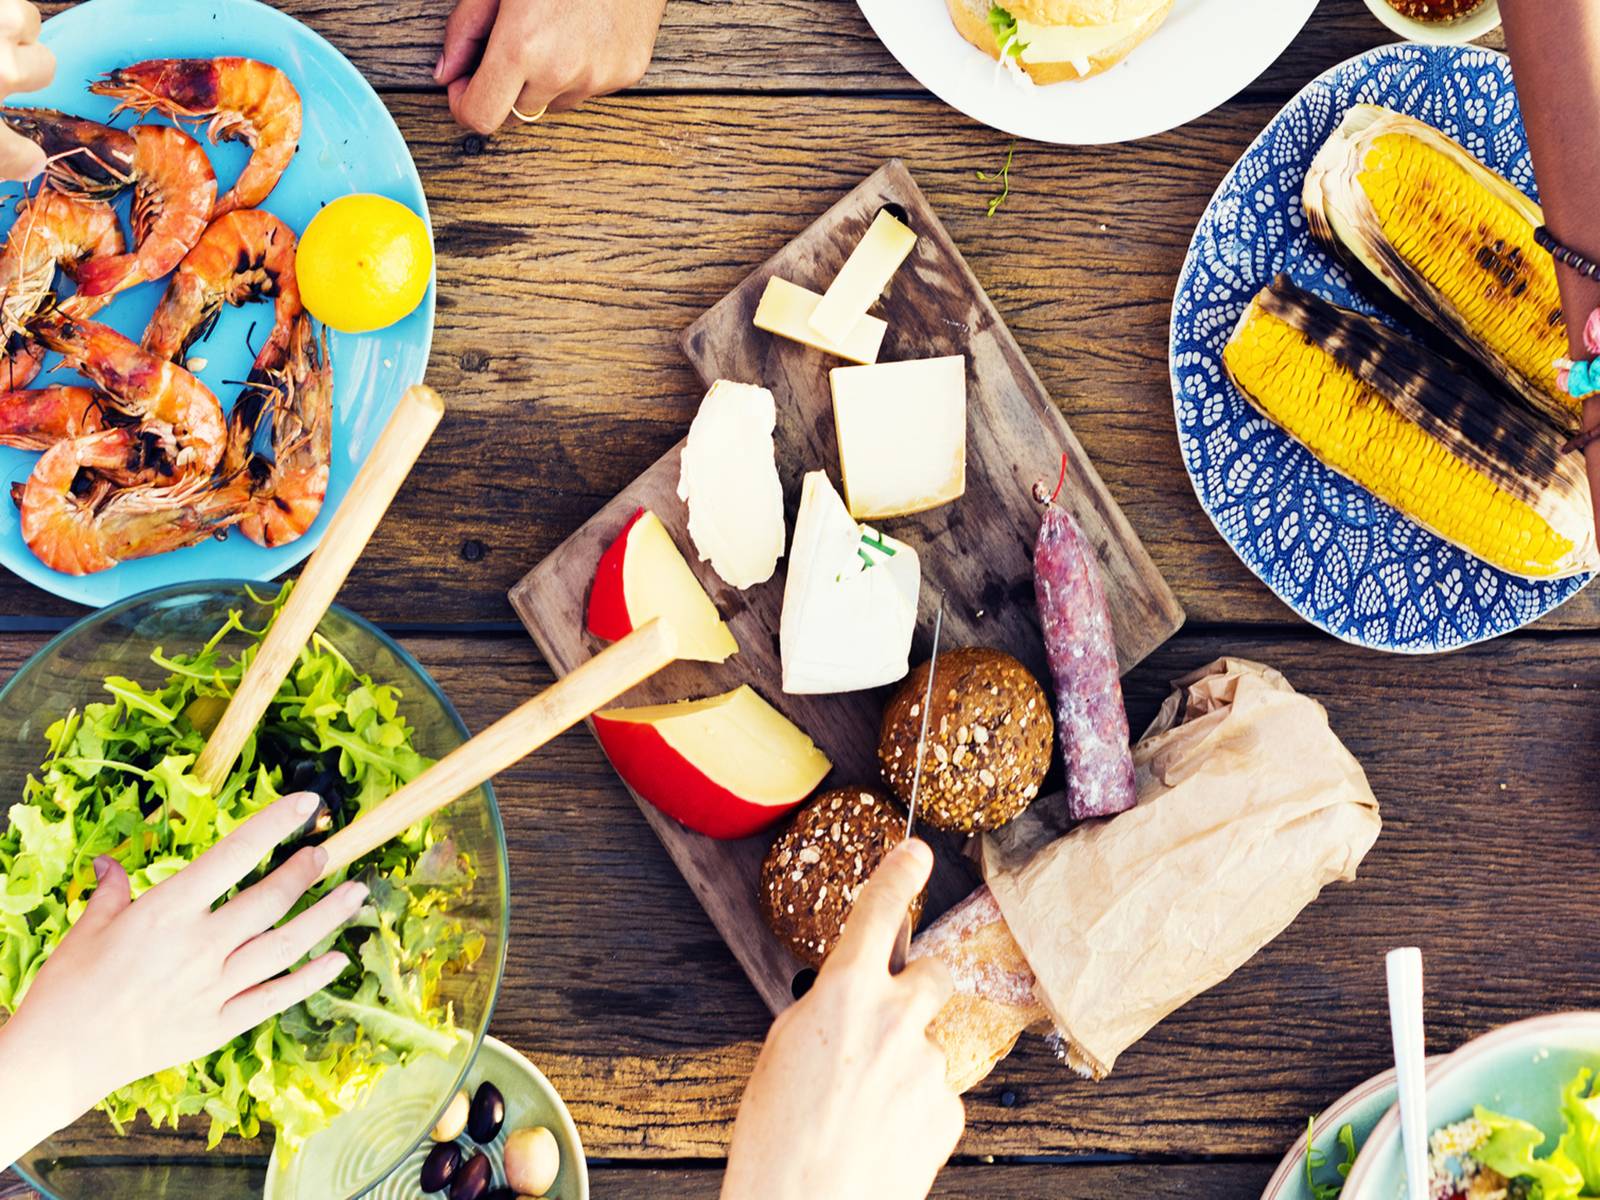 Holztisch auf dem Salat, Garnelen, Maiskolben, Wurst und Käse stehen. Hände von Personen, die sich bedienen